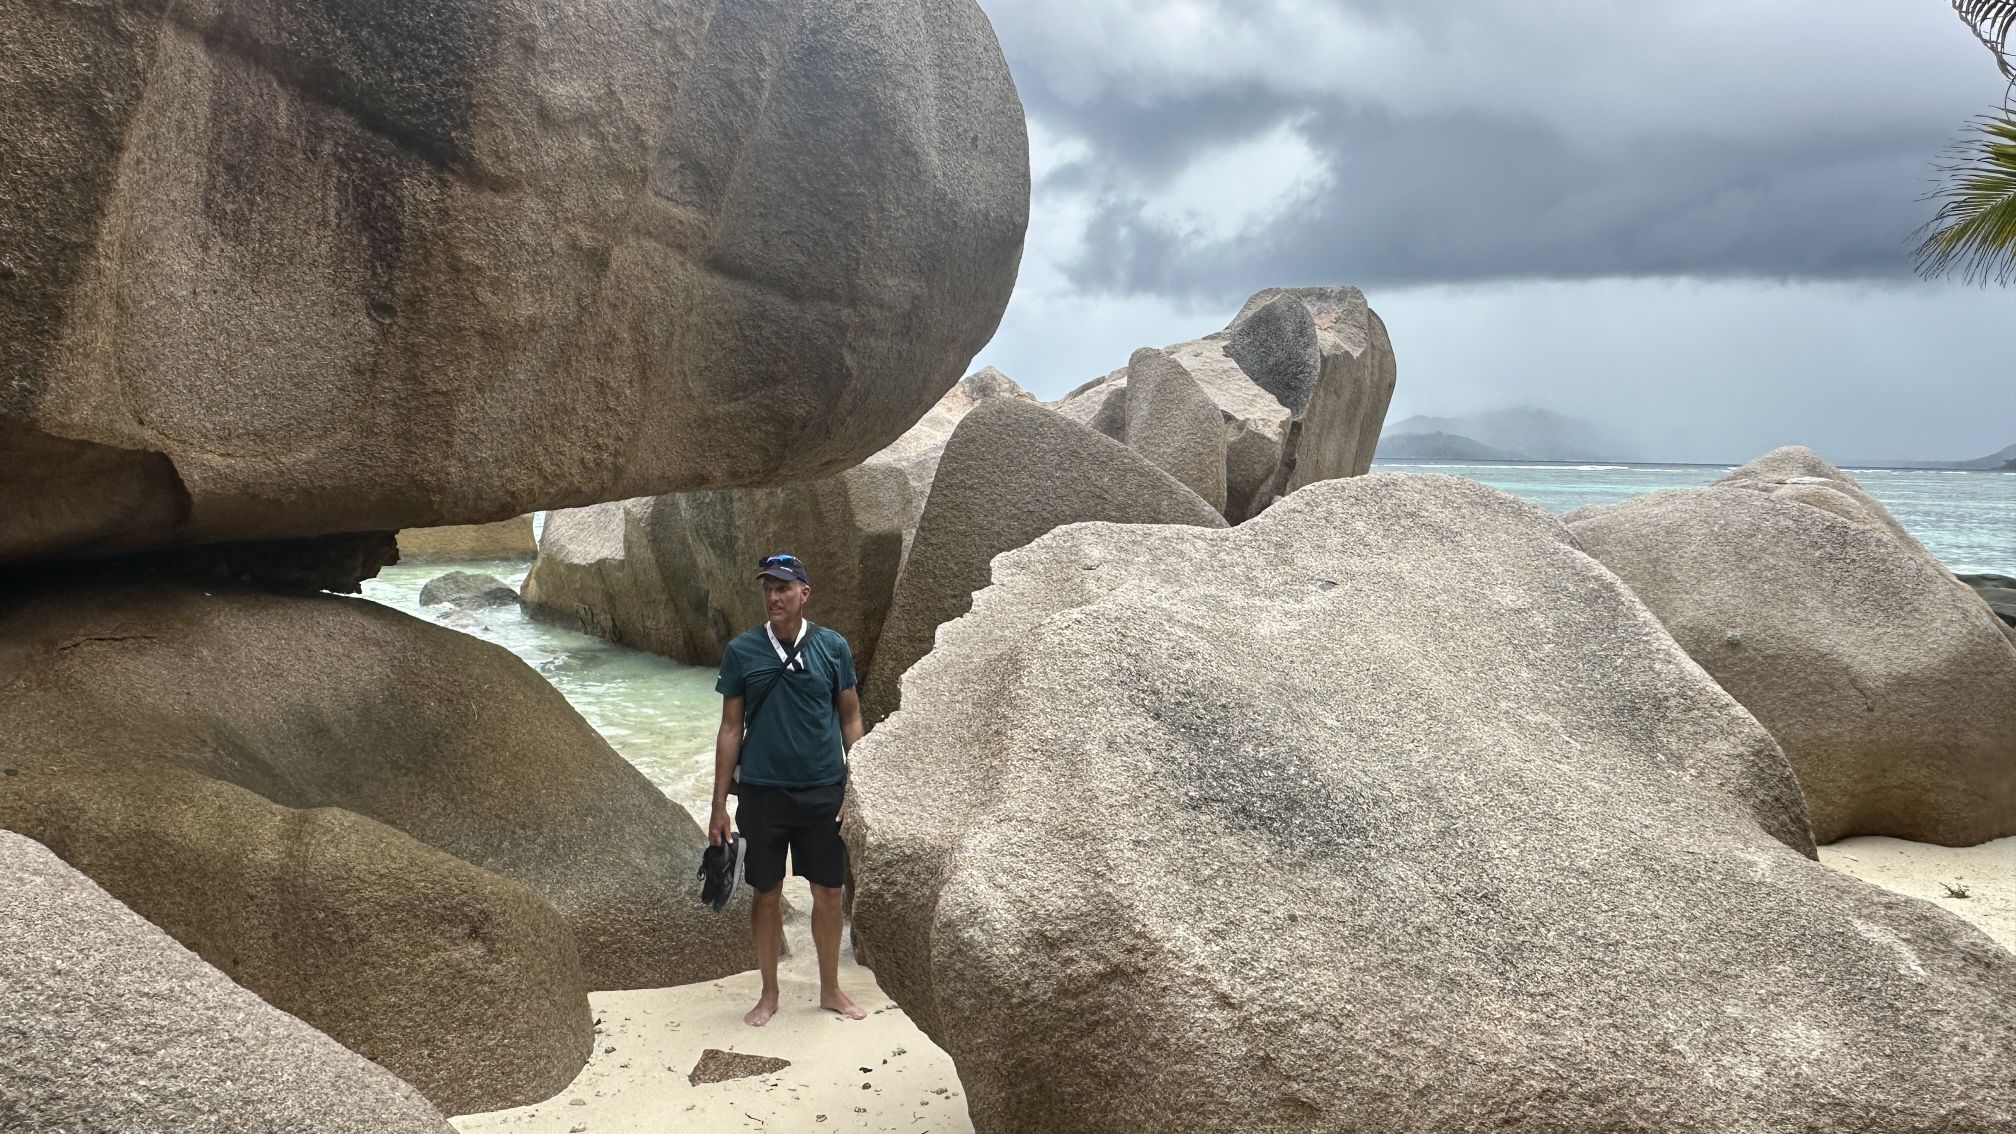 Riesige, glatt geschliffene Felsen, wie sie für die Seychellen typisch sind.